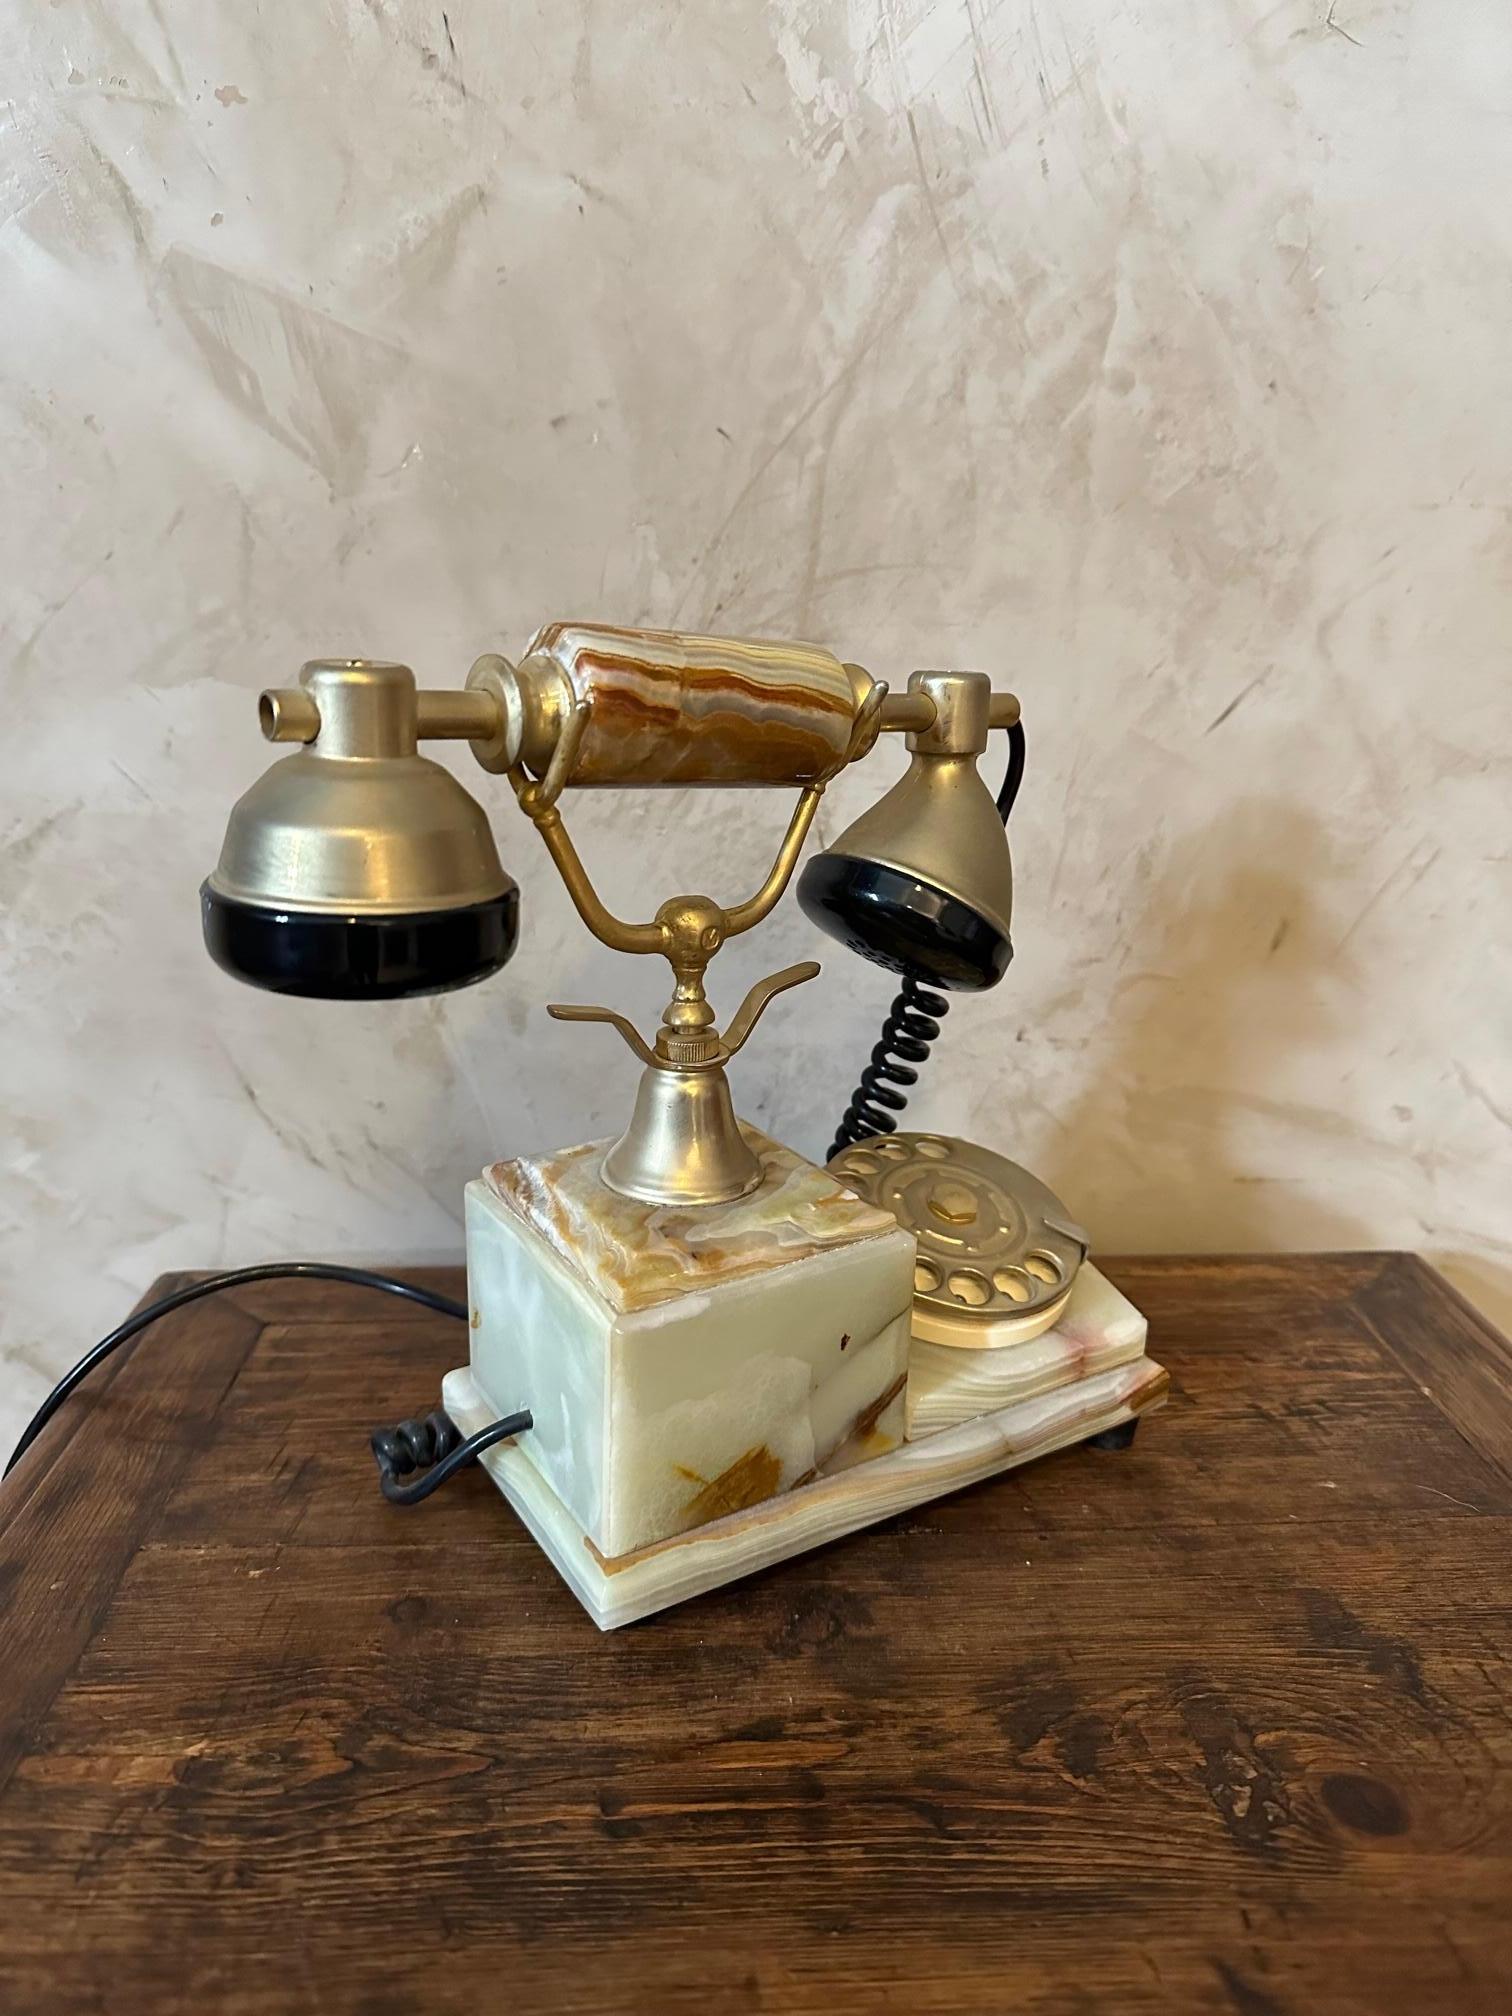 Marmor-Telefon aus dem 20. Jahrhundert, hergestellt in Italien in den 60er Jahren. 
Grüner Marmor und Messing. Arbeitet noch. Sehr guter Zustand. Retro-Stil.